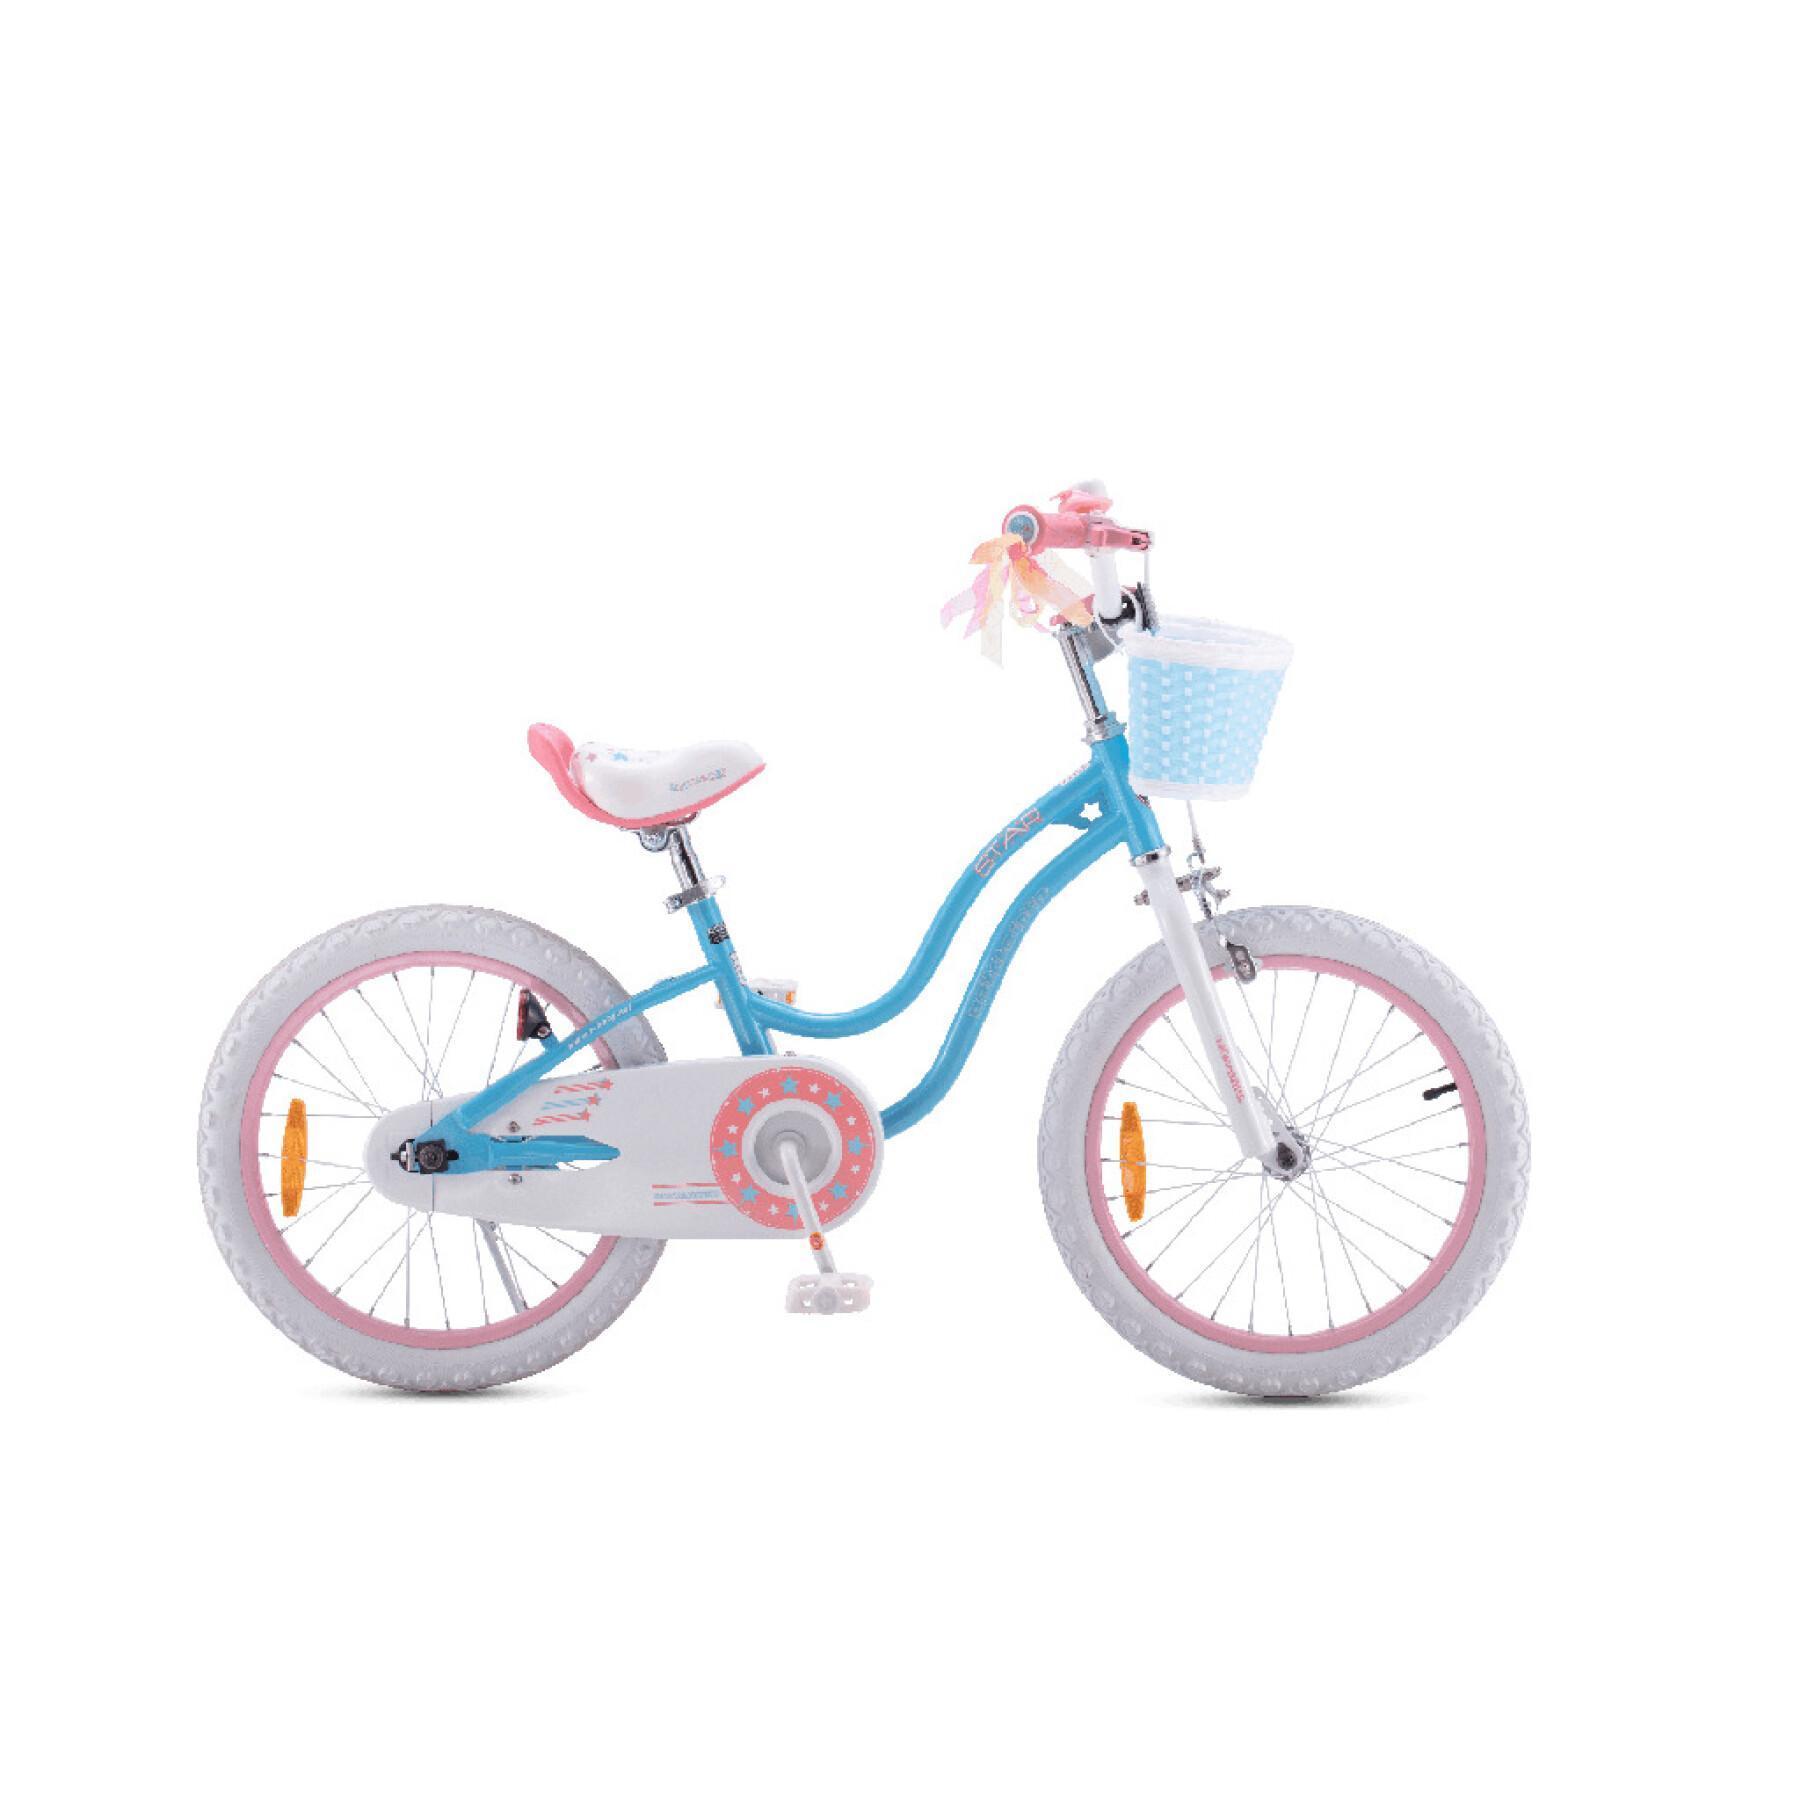 Bicicleta para niños RoyalBaby Star 16